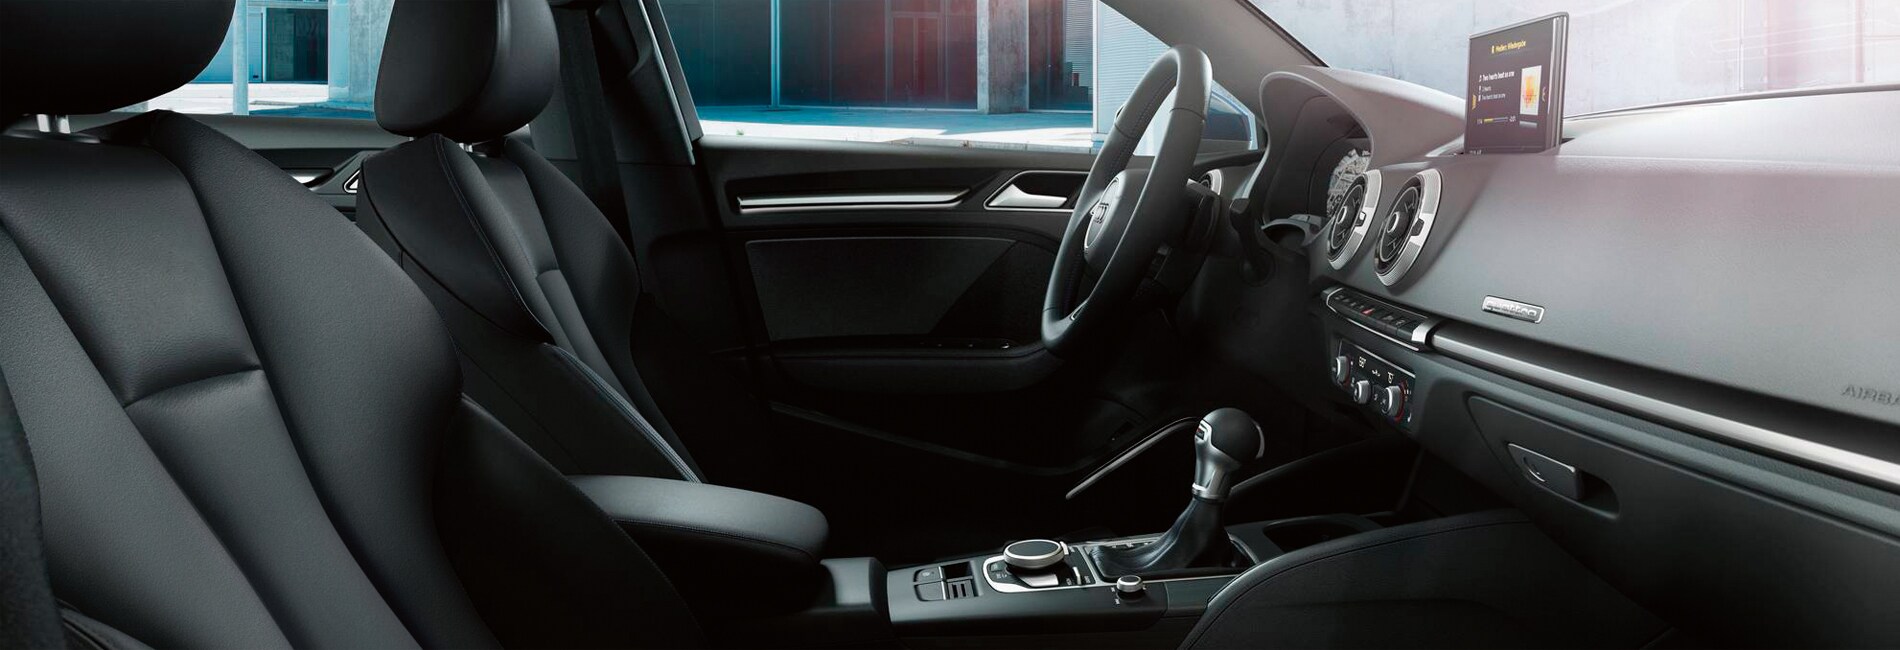 Audi A3 e-tron Interior Features